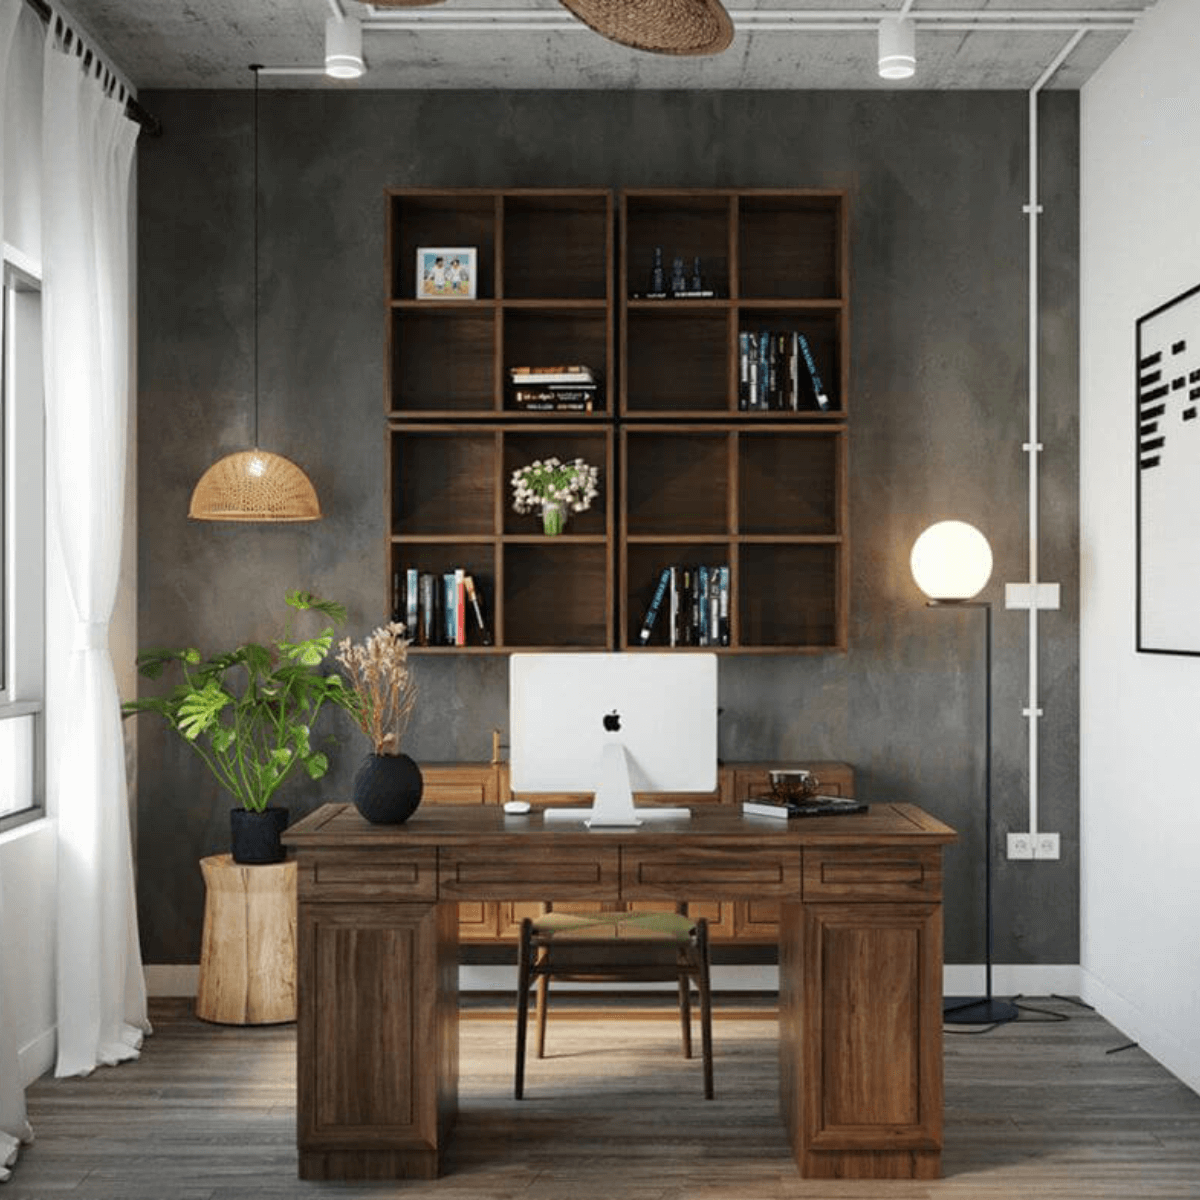 Văn phòng nhỏ đẹp giúp tiết kiệm diện tích